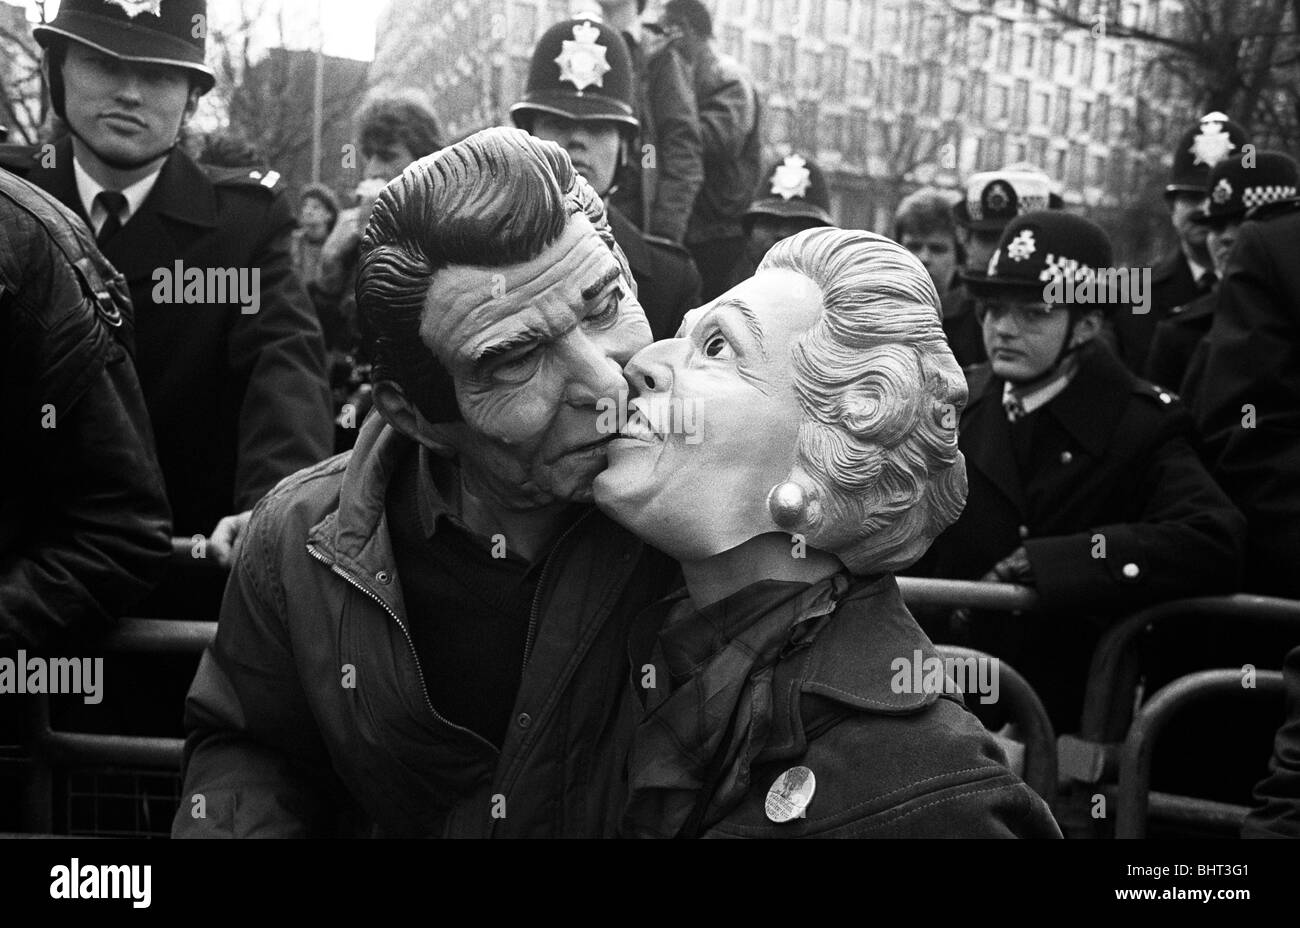 Maskierte Demonstranten posieren als westliche Führer Ronald Reagan und Margaret Thatcher küssen bei einer Demonstration der CND. Stockfoto